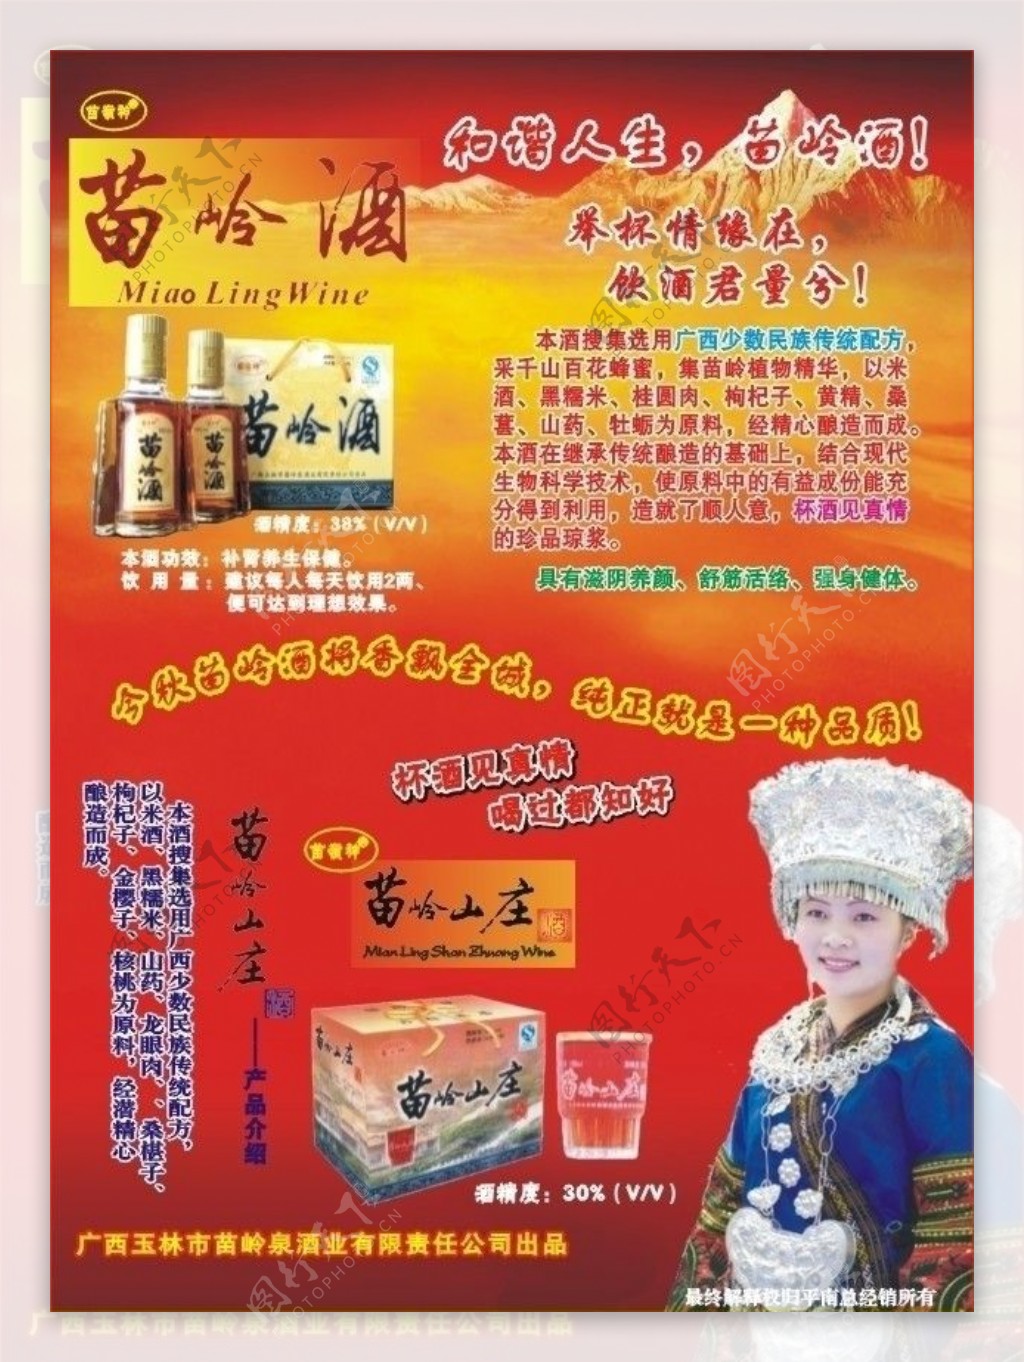 苗岭酒宣传广告图片